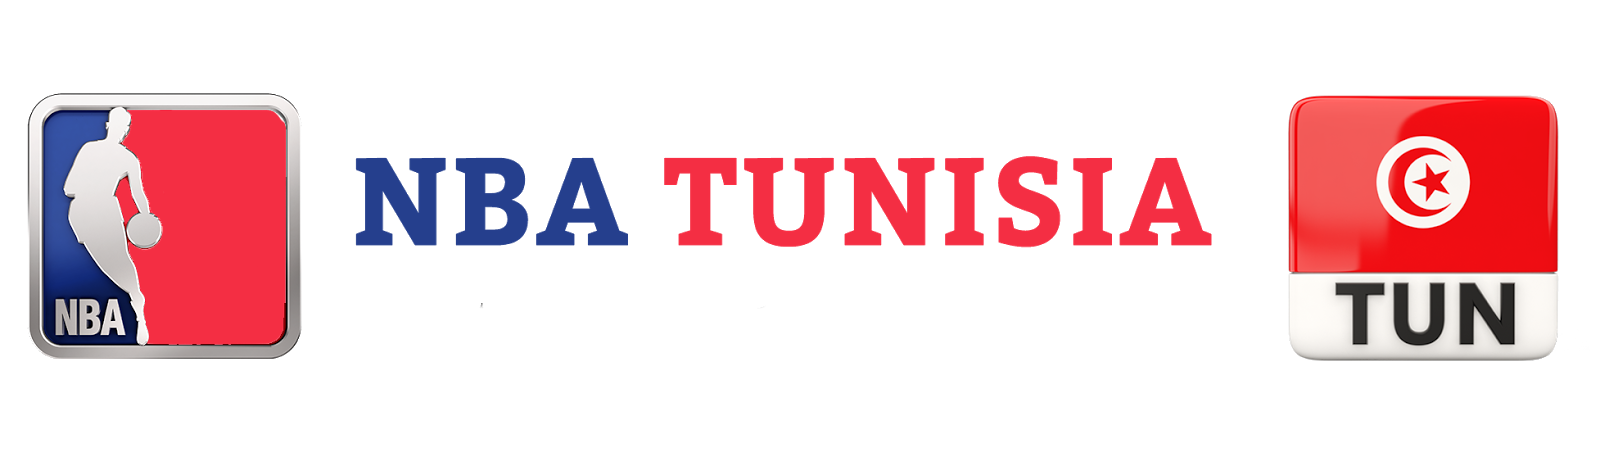 NBA TUNISIA